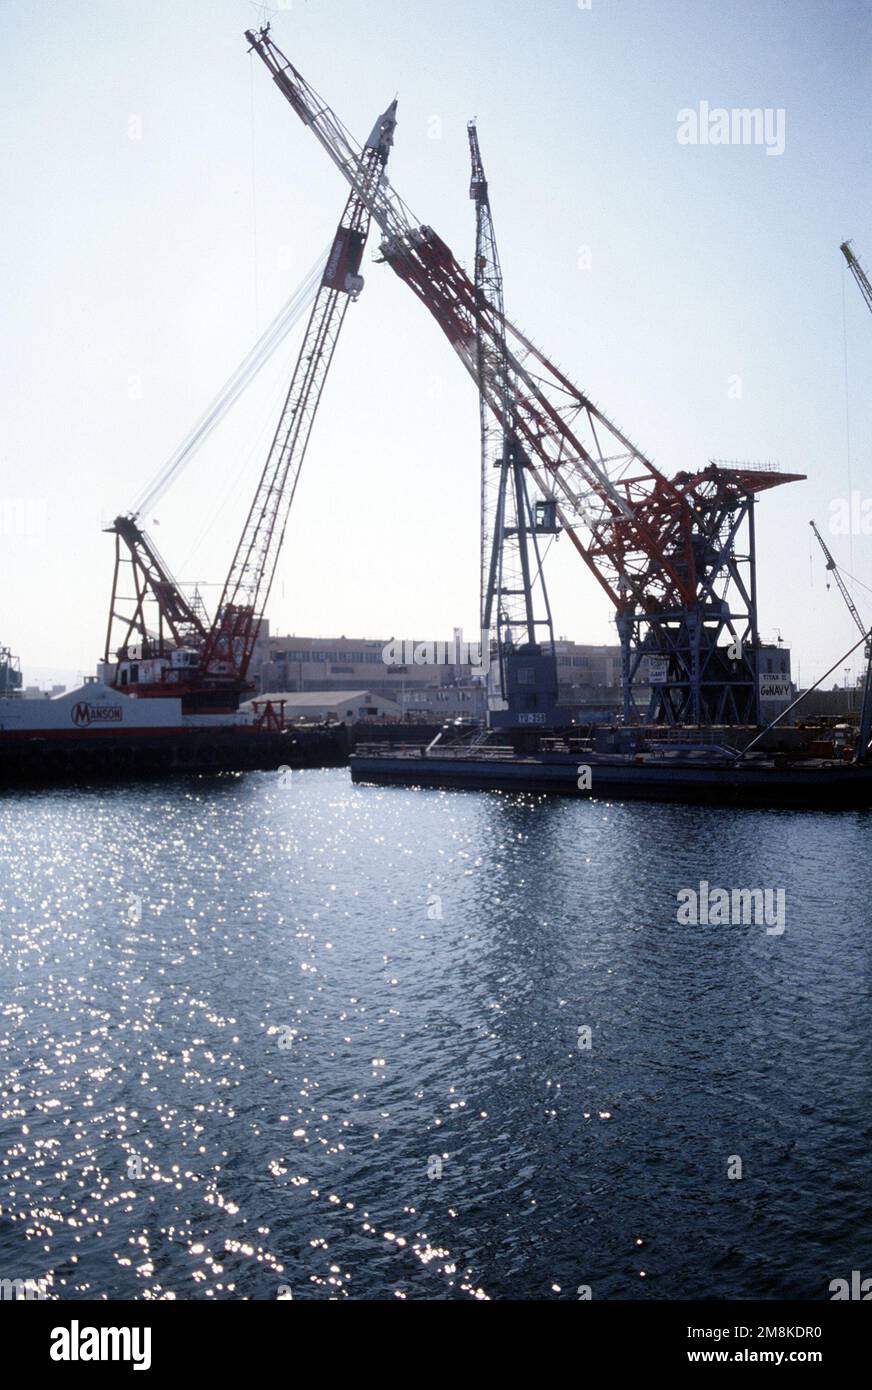 La plus grande grue du chantier naval de long Beach, le Titan II, est démantelée pour être expédiée vers la zone du canal de Panama. La grue est venue d'Allemagne à long Beach à la fin de la Seconde Guerre mondiale, tout comme la réparation. Base: Long Beach État: Californie (CA) pays: Etats-Unis d'Amérique (USA) Banque D'Images